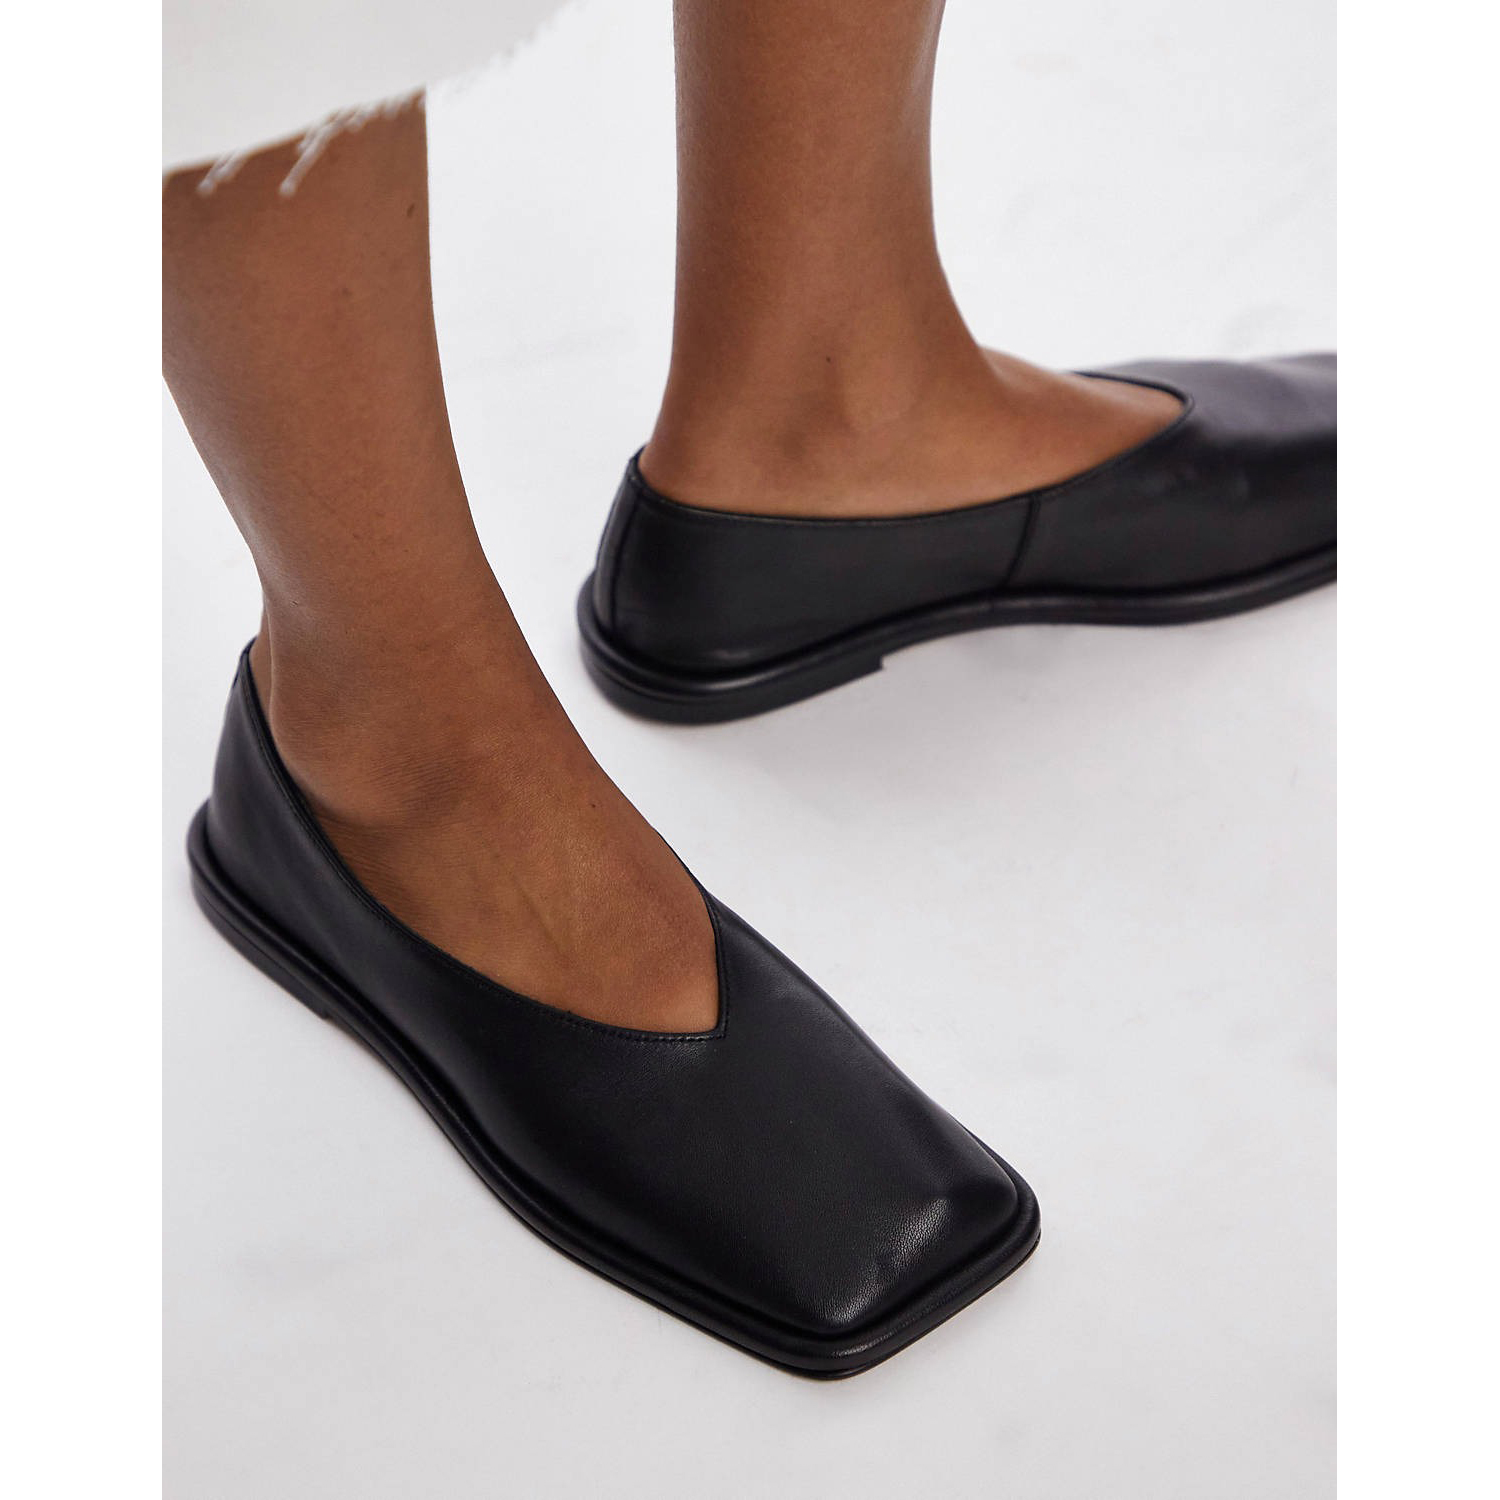 Туфли Topshop Charlotte Leather Square Toe Unlined Flat, черный женские туфли в стиле лолита туфли мэри джейн с бантом на платформе кожаные туфли на плоской подошве с квадратным носком повседневные т